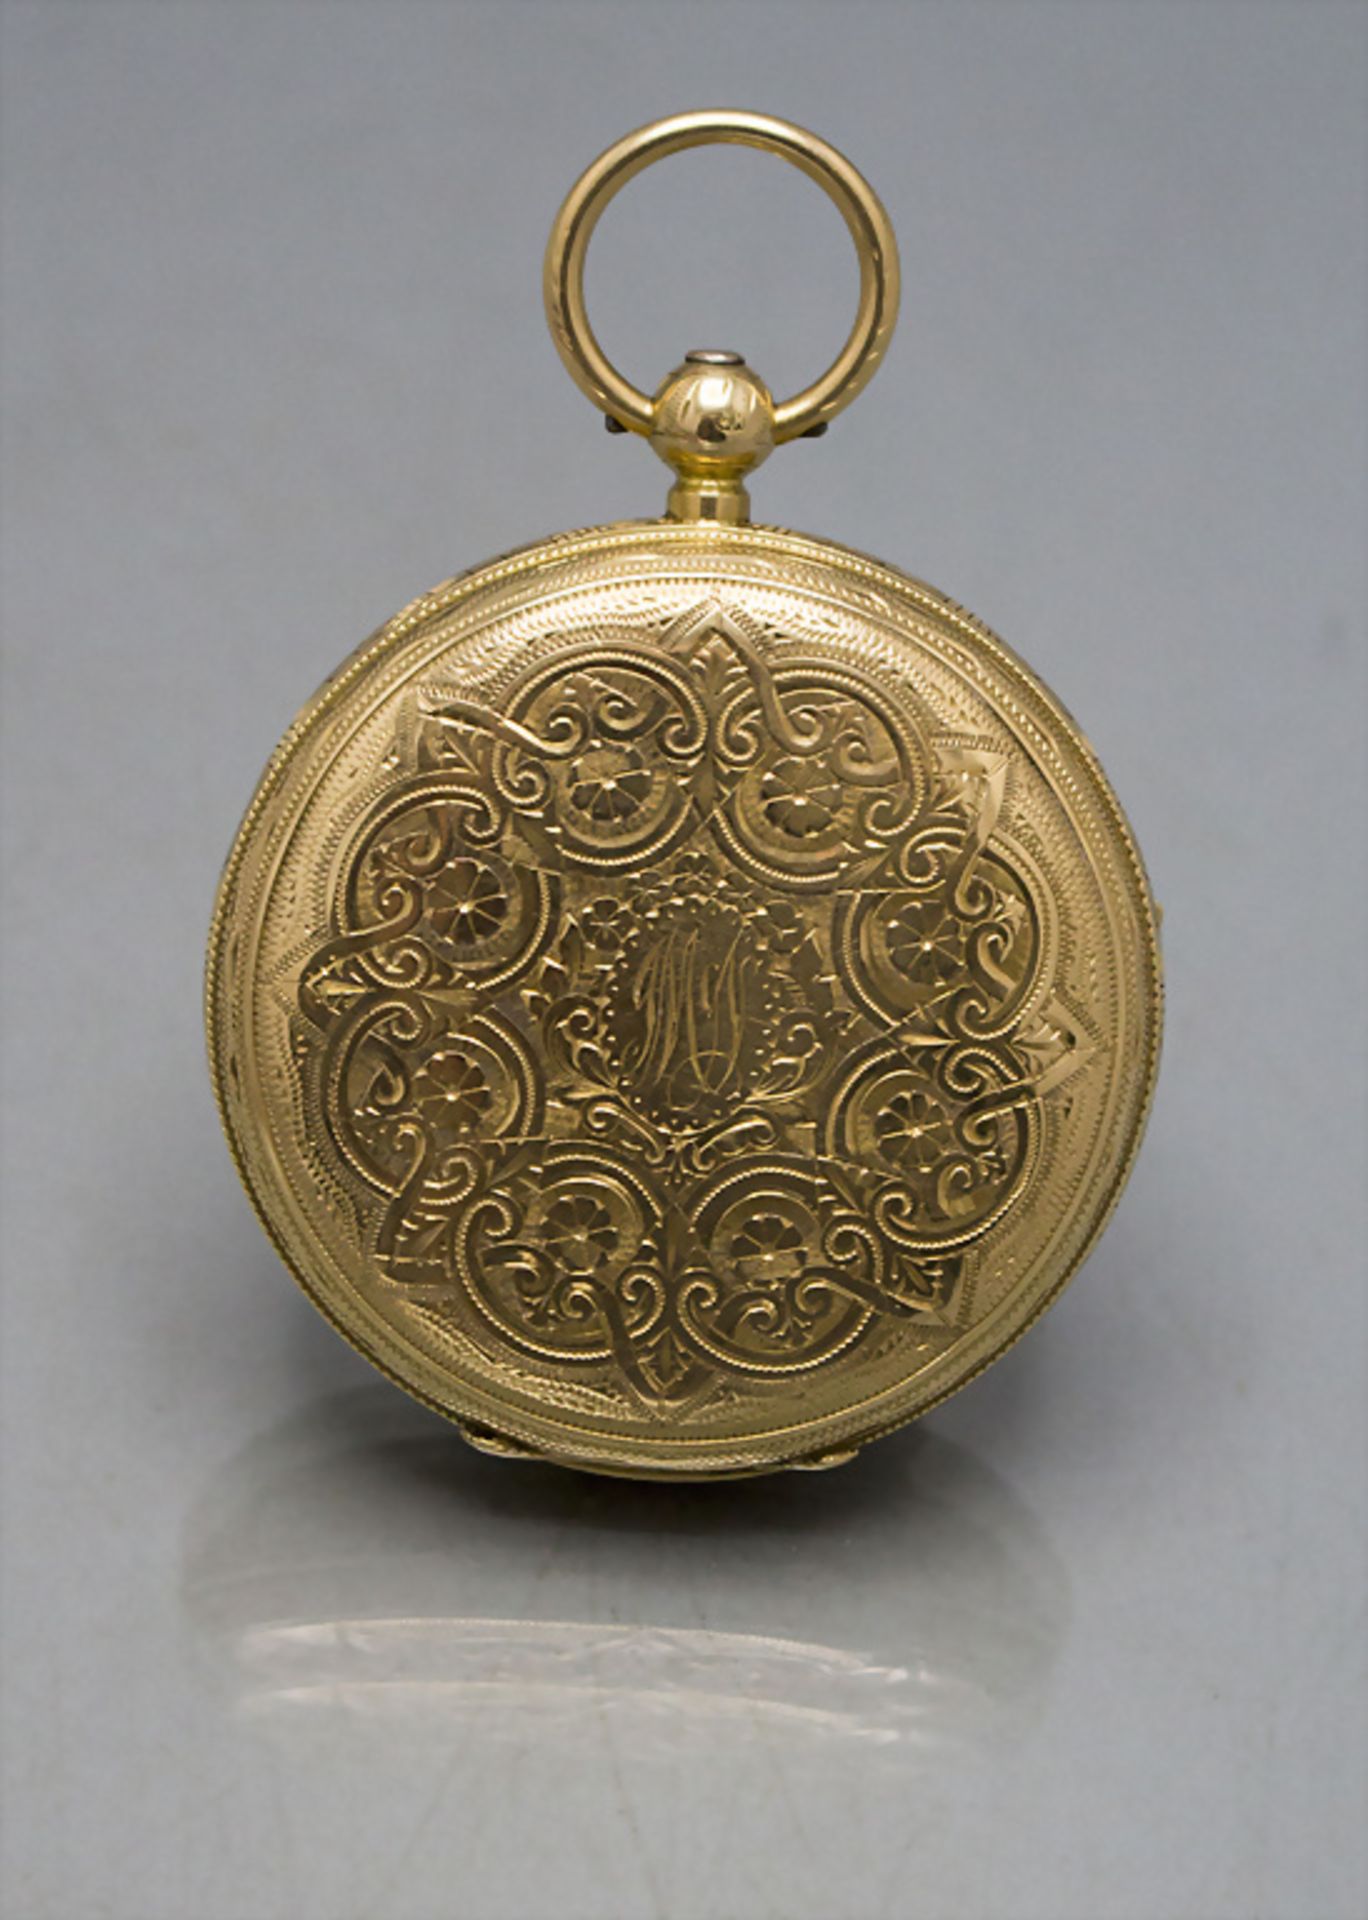 Offene Taschenuhr / An 18 ct gold pocket watch, William Sandford, London, 19. Jh. - Bild 11 aus 14